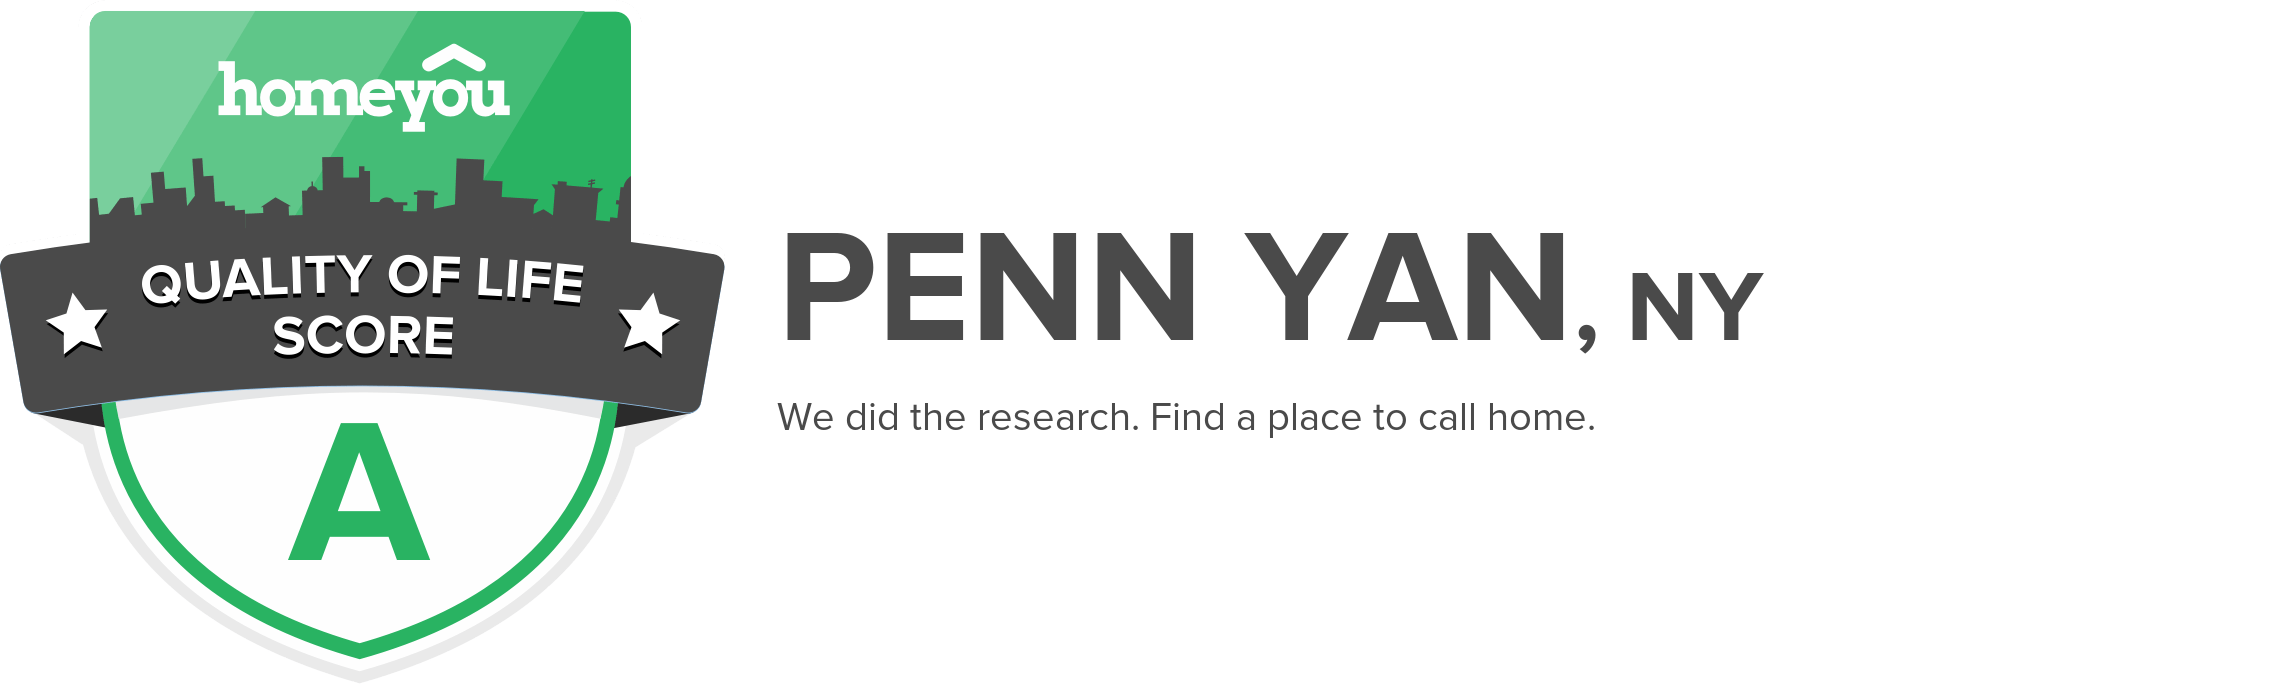 Penn Yan, NY